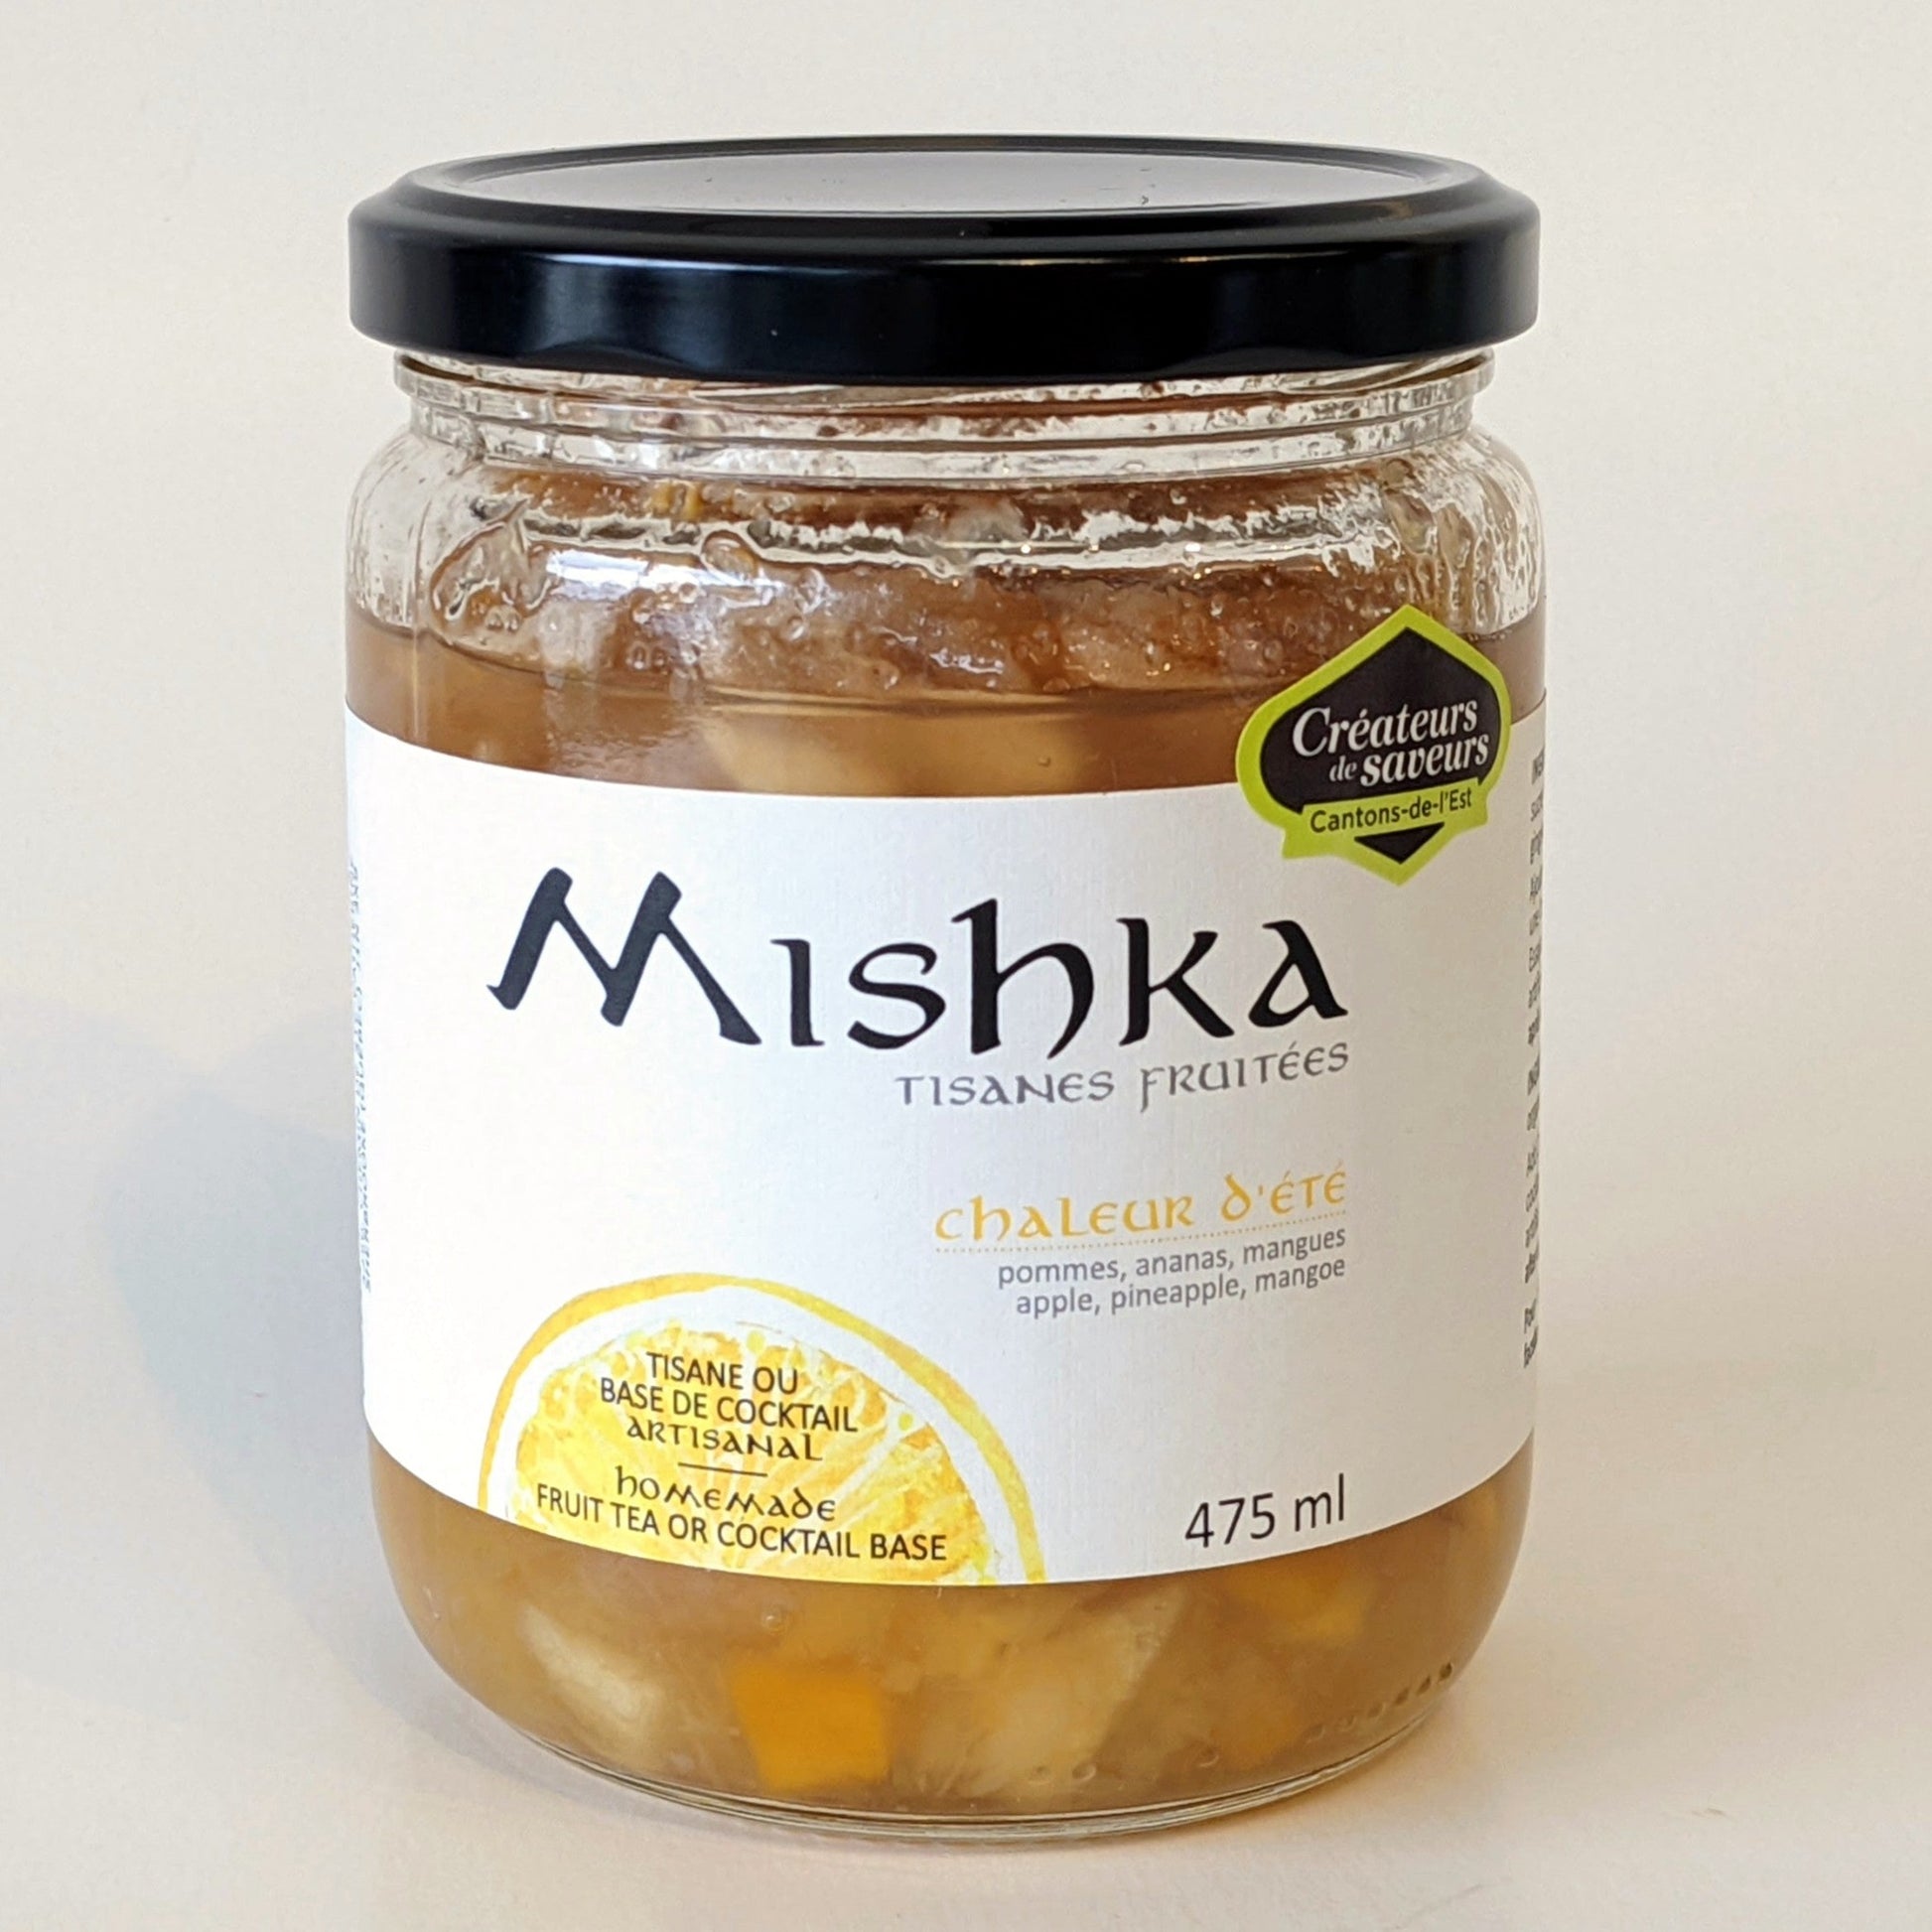 Mishka - Chaleur d'été 475 ml